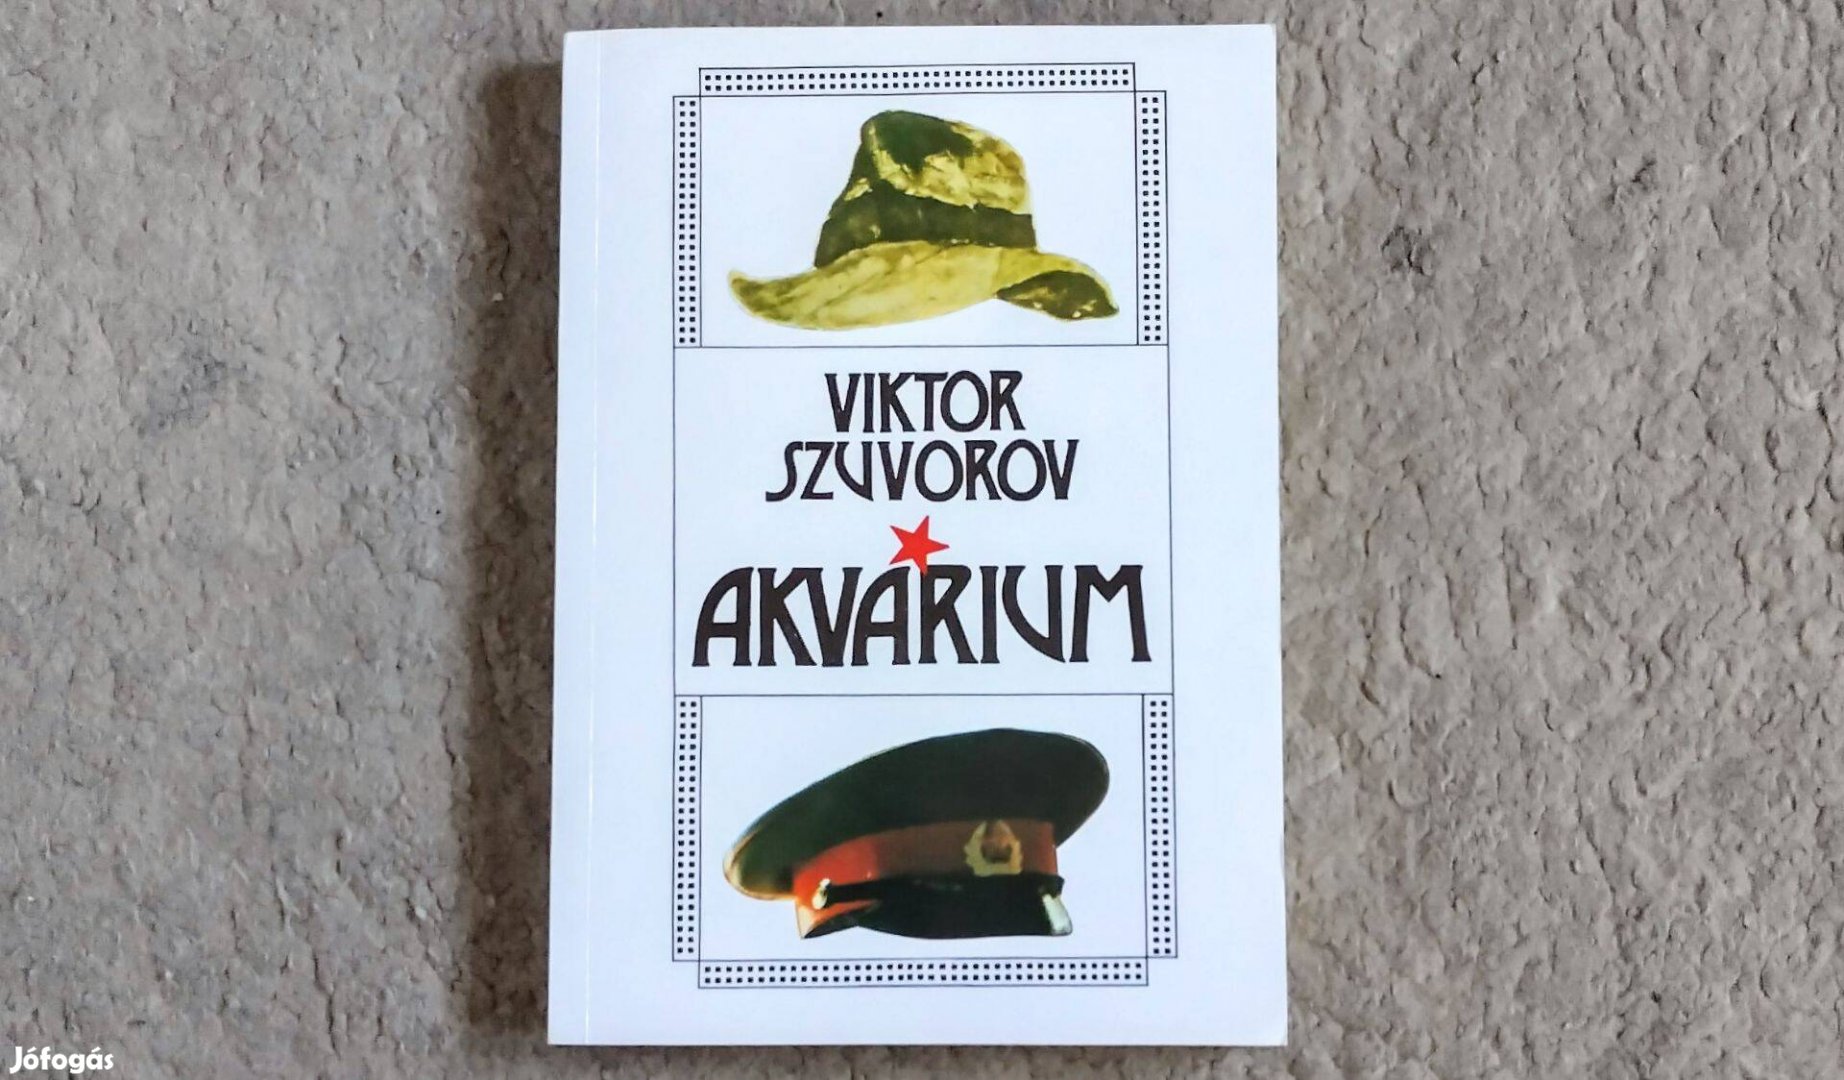 Akvárium - Viktor Szuvorov - Egy szovjet hírszerző karrierje